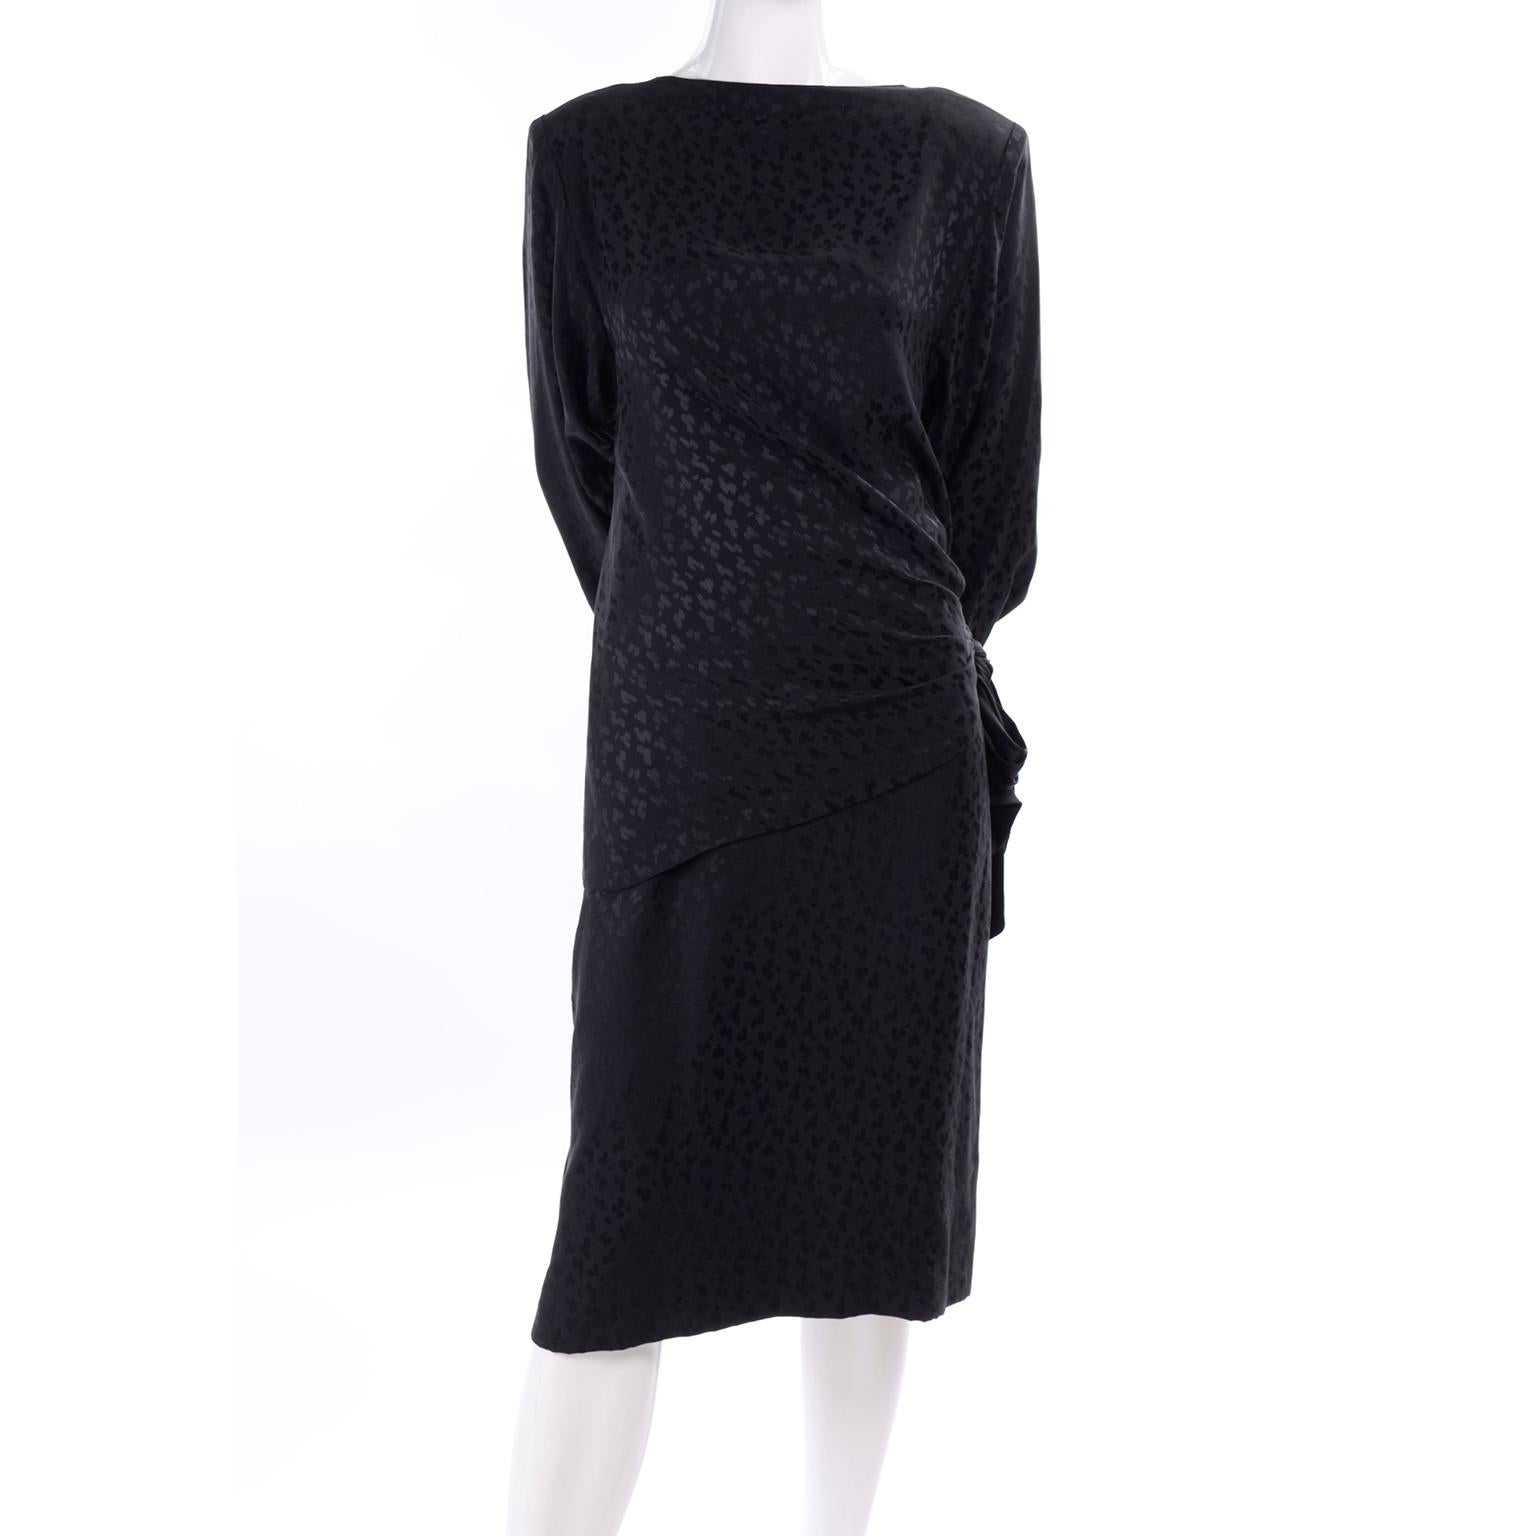 Il s'agit d'une fabuleuse robe 2 pièces en soie noire Adolfo avec jupe crayon et top des années 1980. Le tissu de soie noire présente un magnifique motif imprimé léopard ton sur ton. Le haut est doté d'un lien drapé spectaculaire à la taille